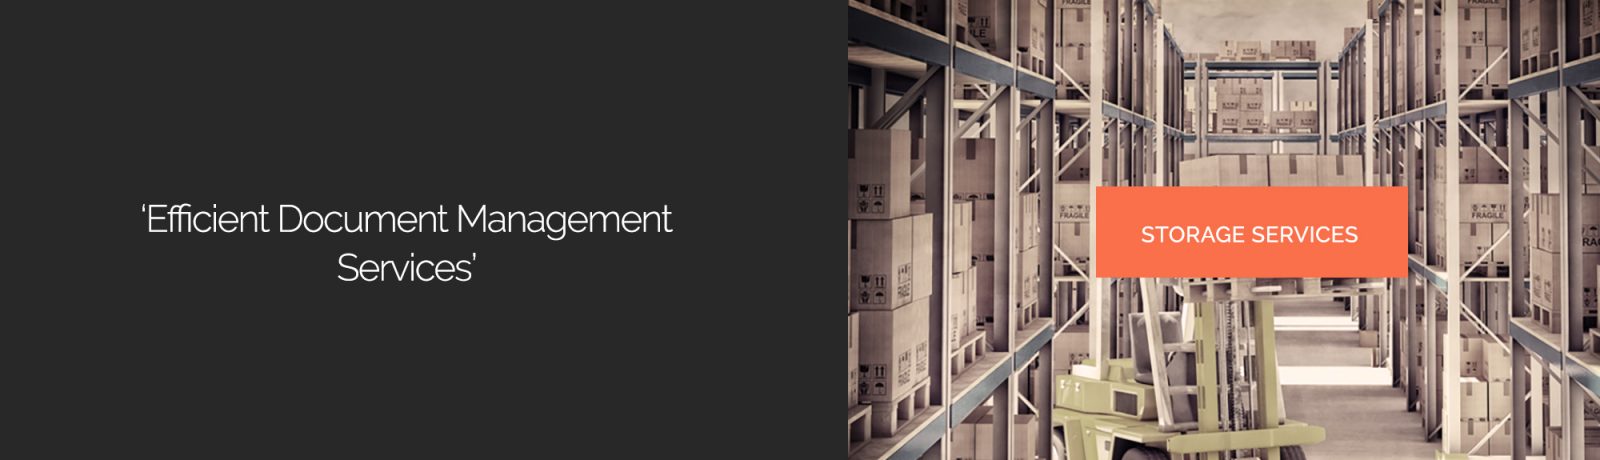 Document Management Services